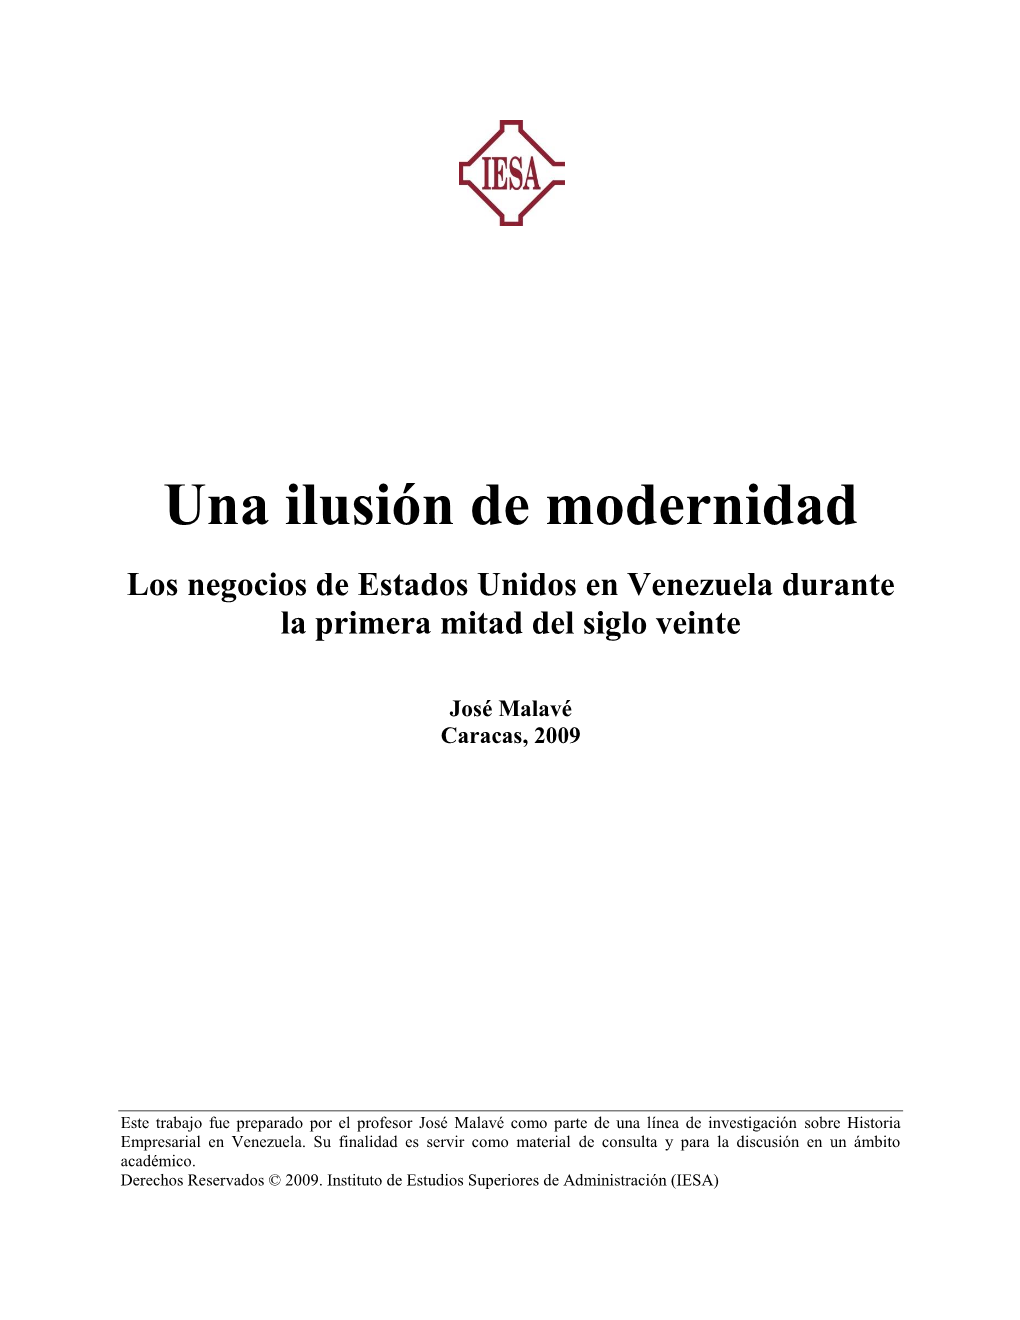 Descarga El .PDF